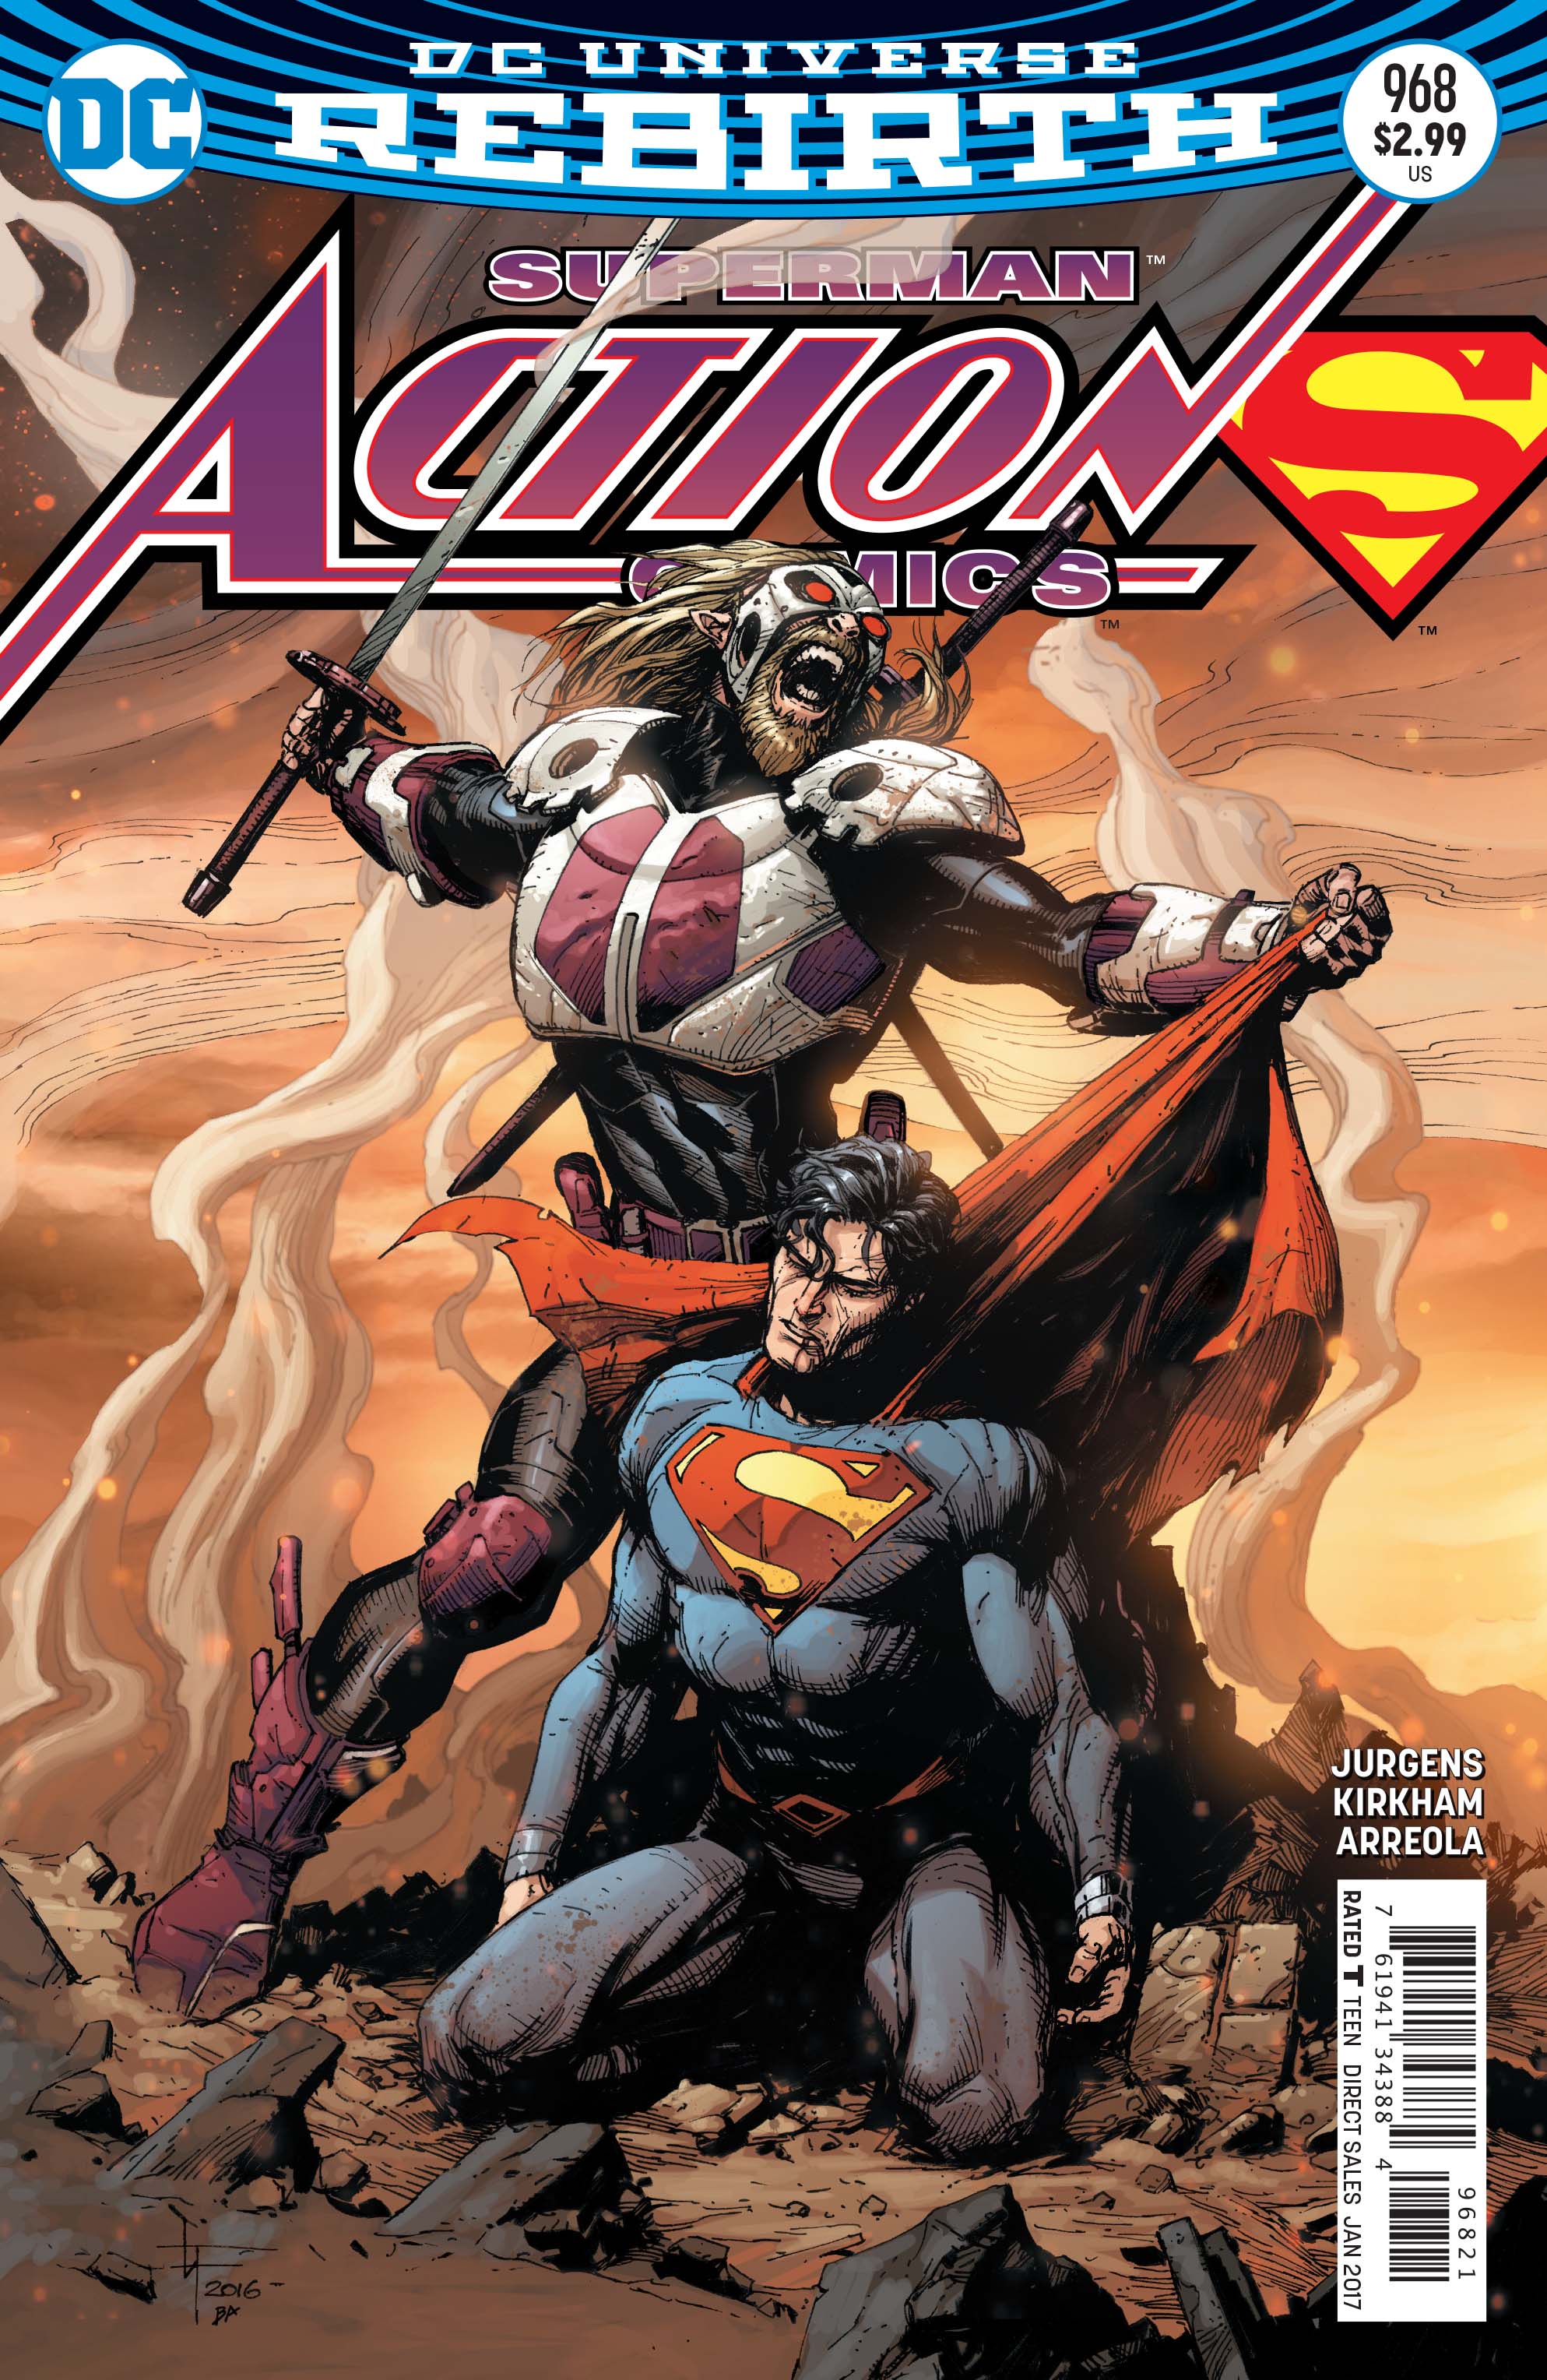 Action Comics #968 Review